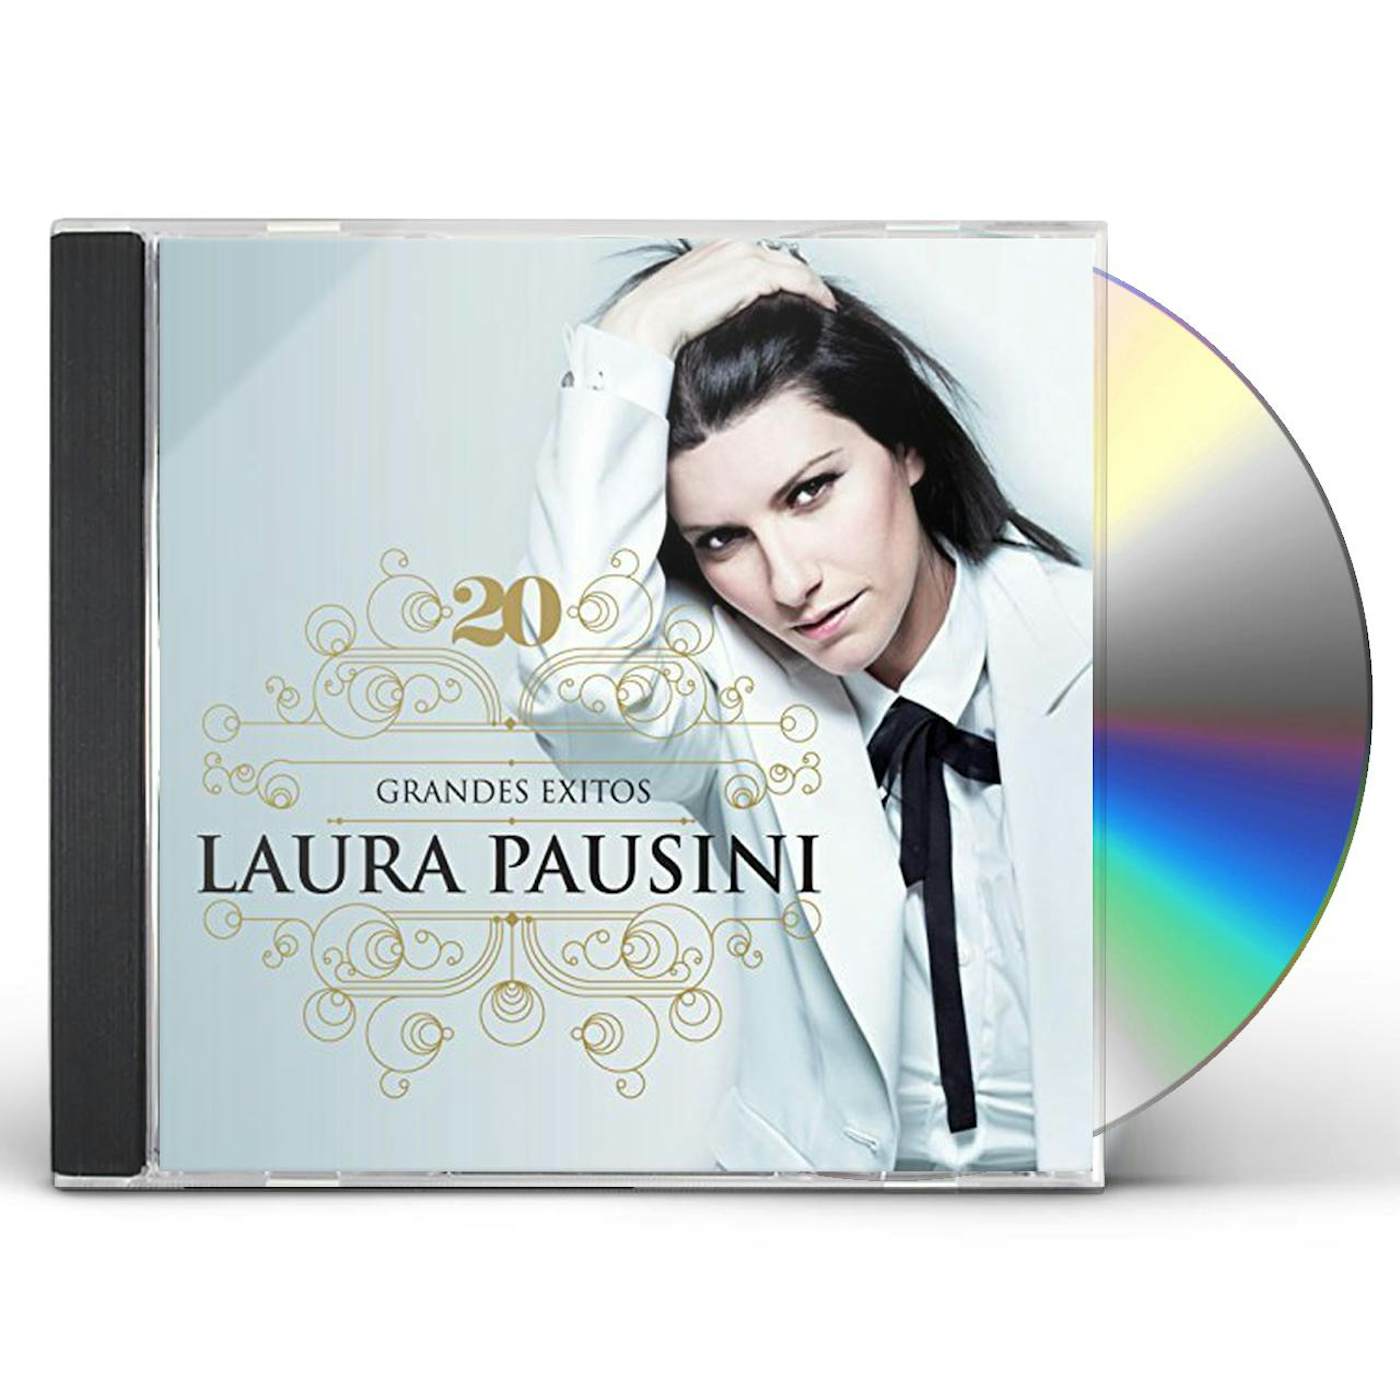 Laura Pausini 20: GRANDES EXITOS CD